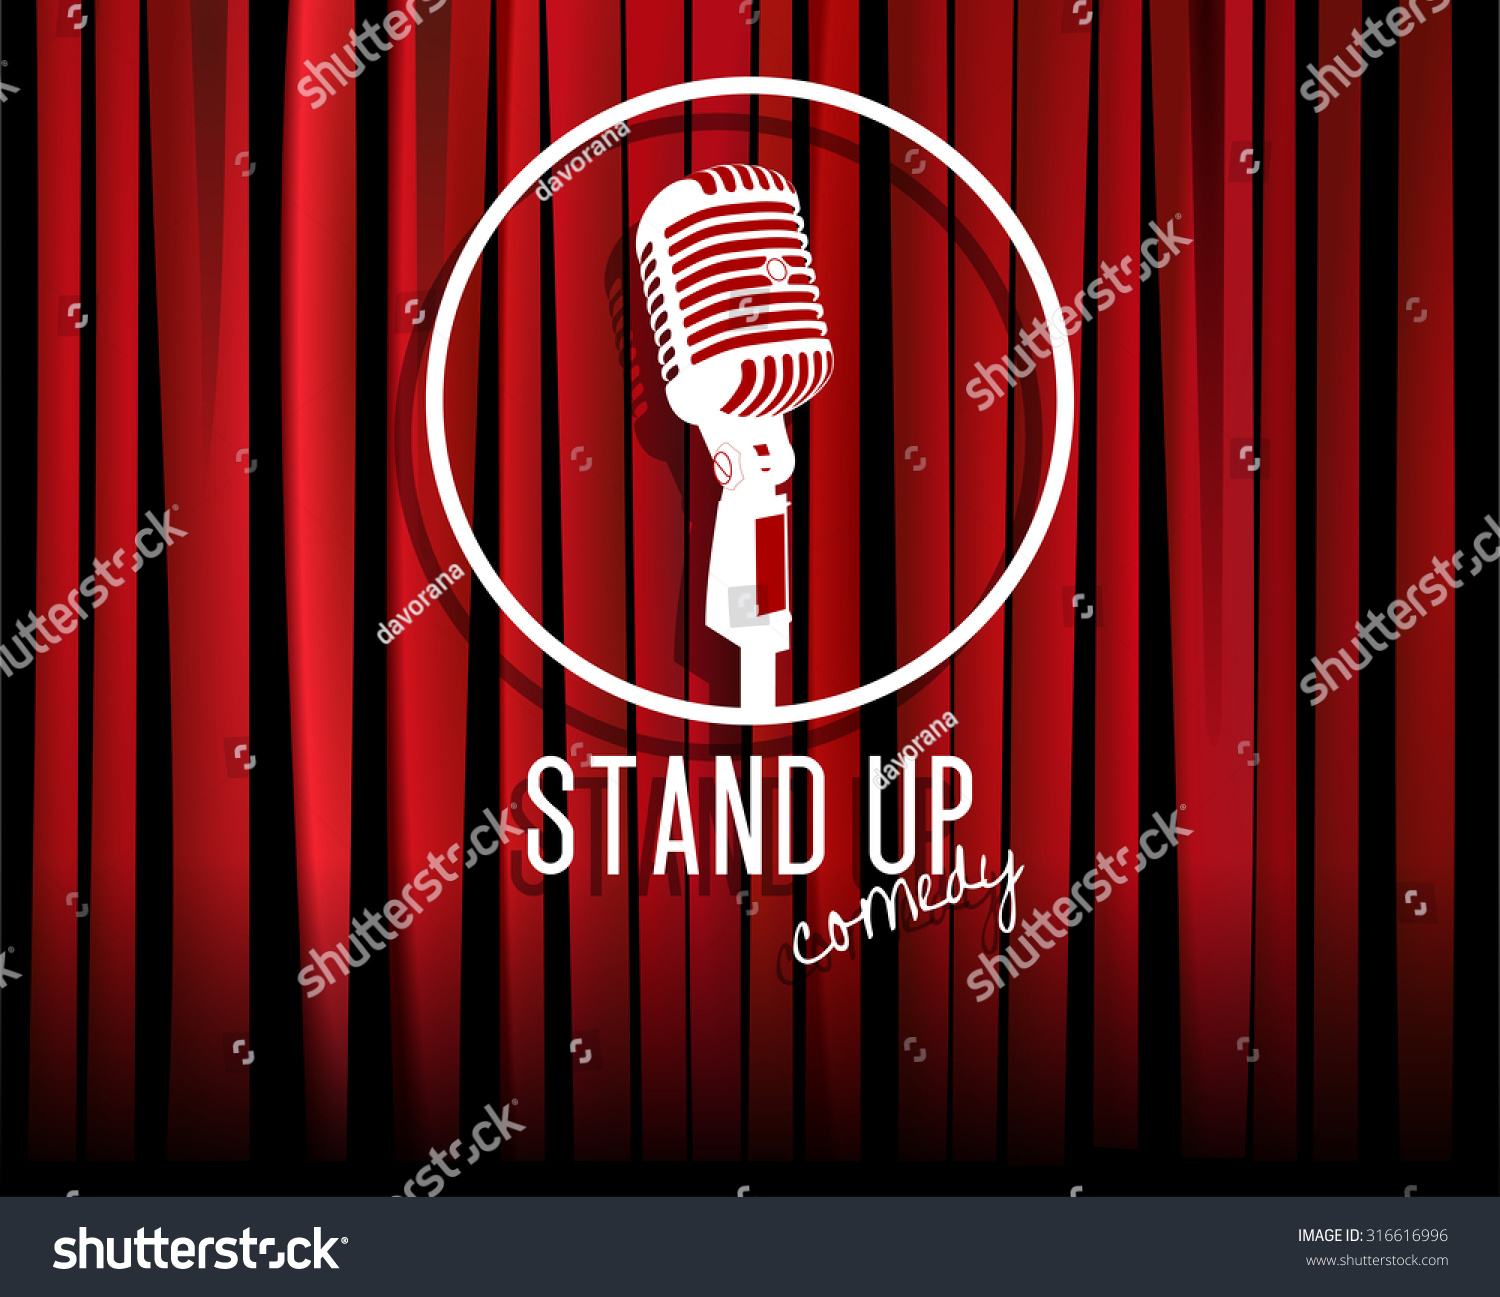 Comedy stand. Стендап шоу логотип. Микрофон стендап. Стендап камеди. Стенд ап арт.